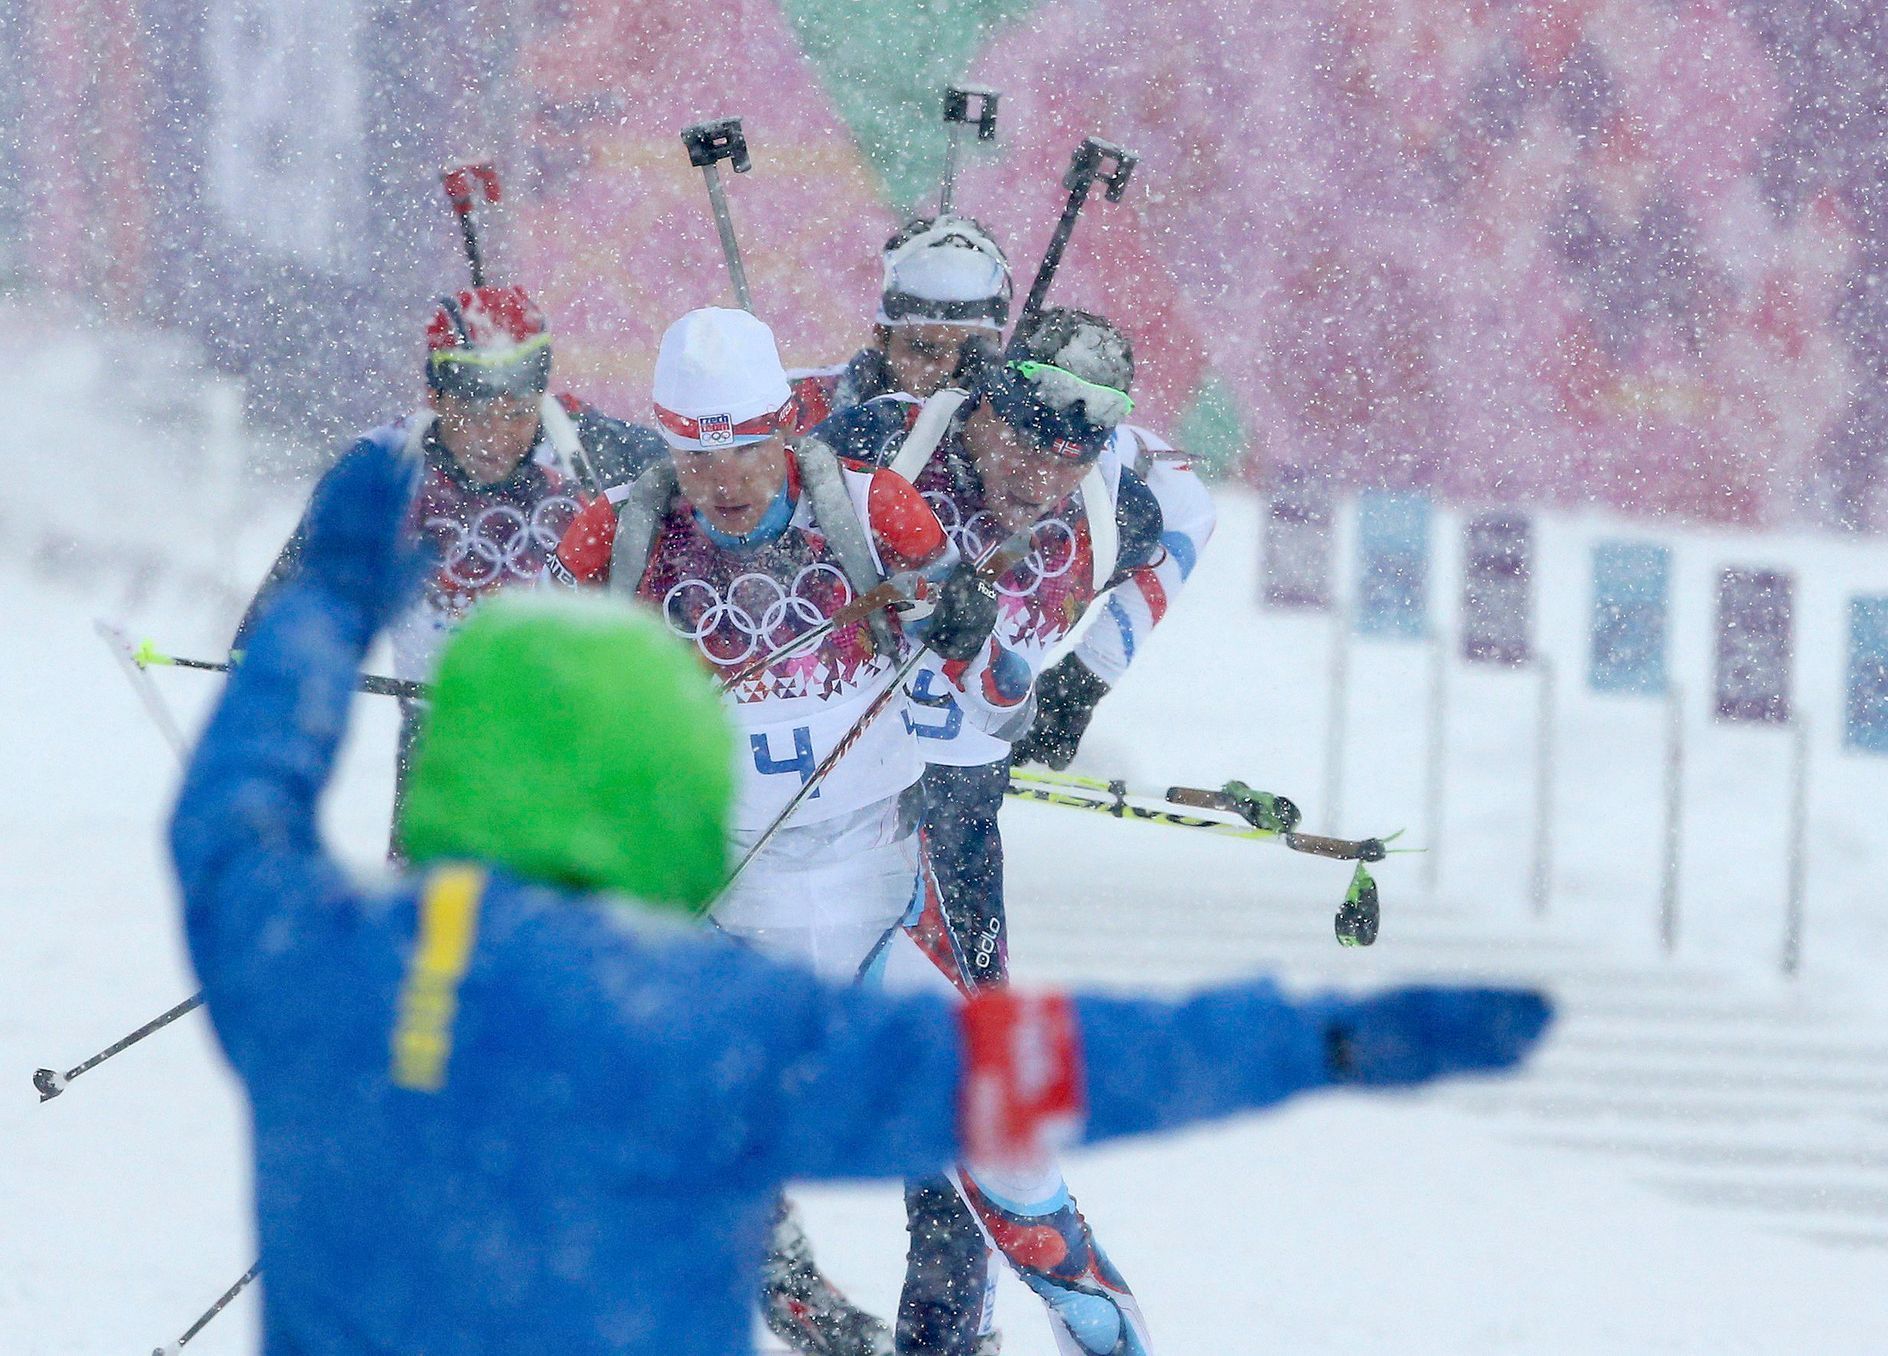 Soči 2014, biatlon hromadný start M: Ondřej Moravec vede skupinu bojující o první místo